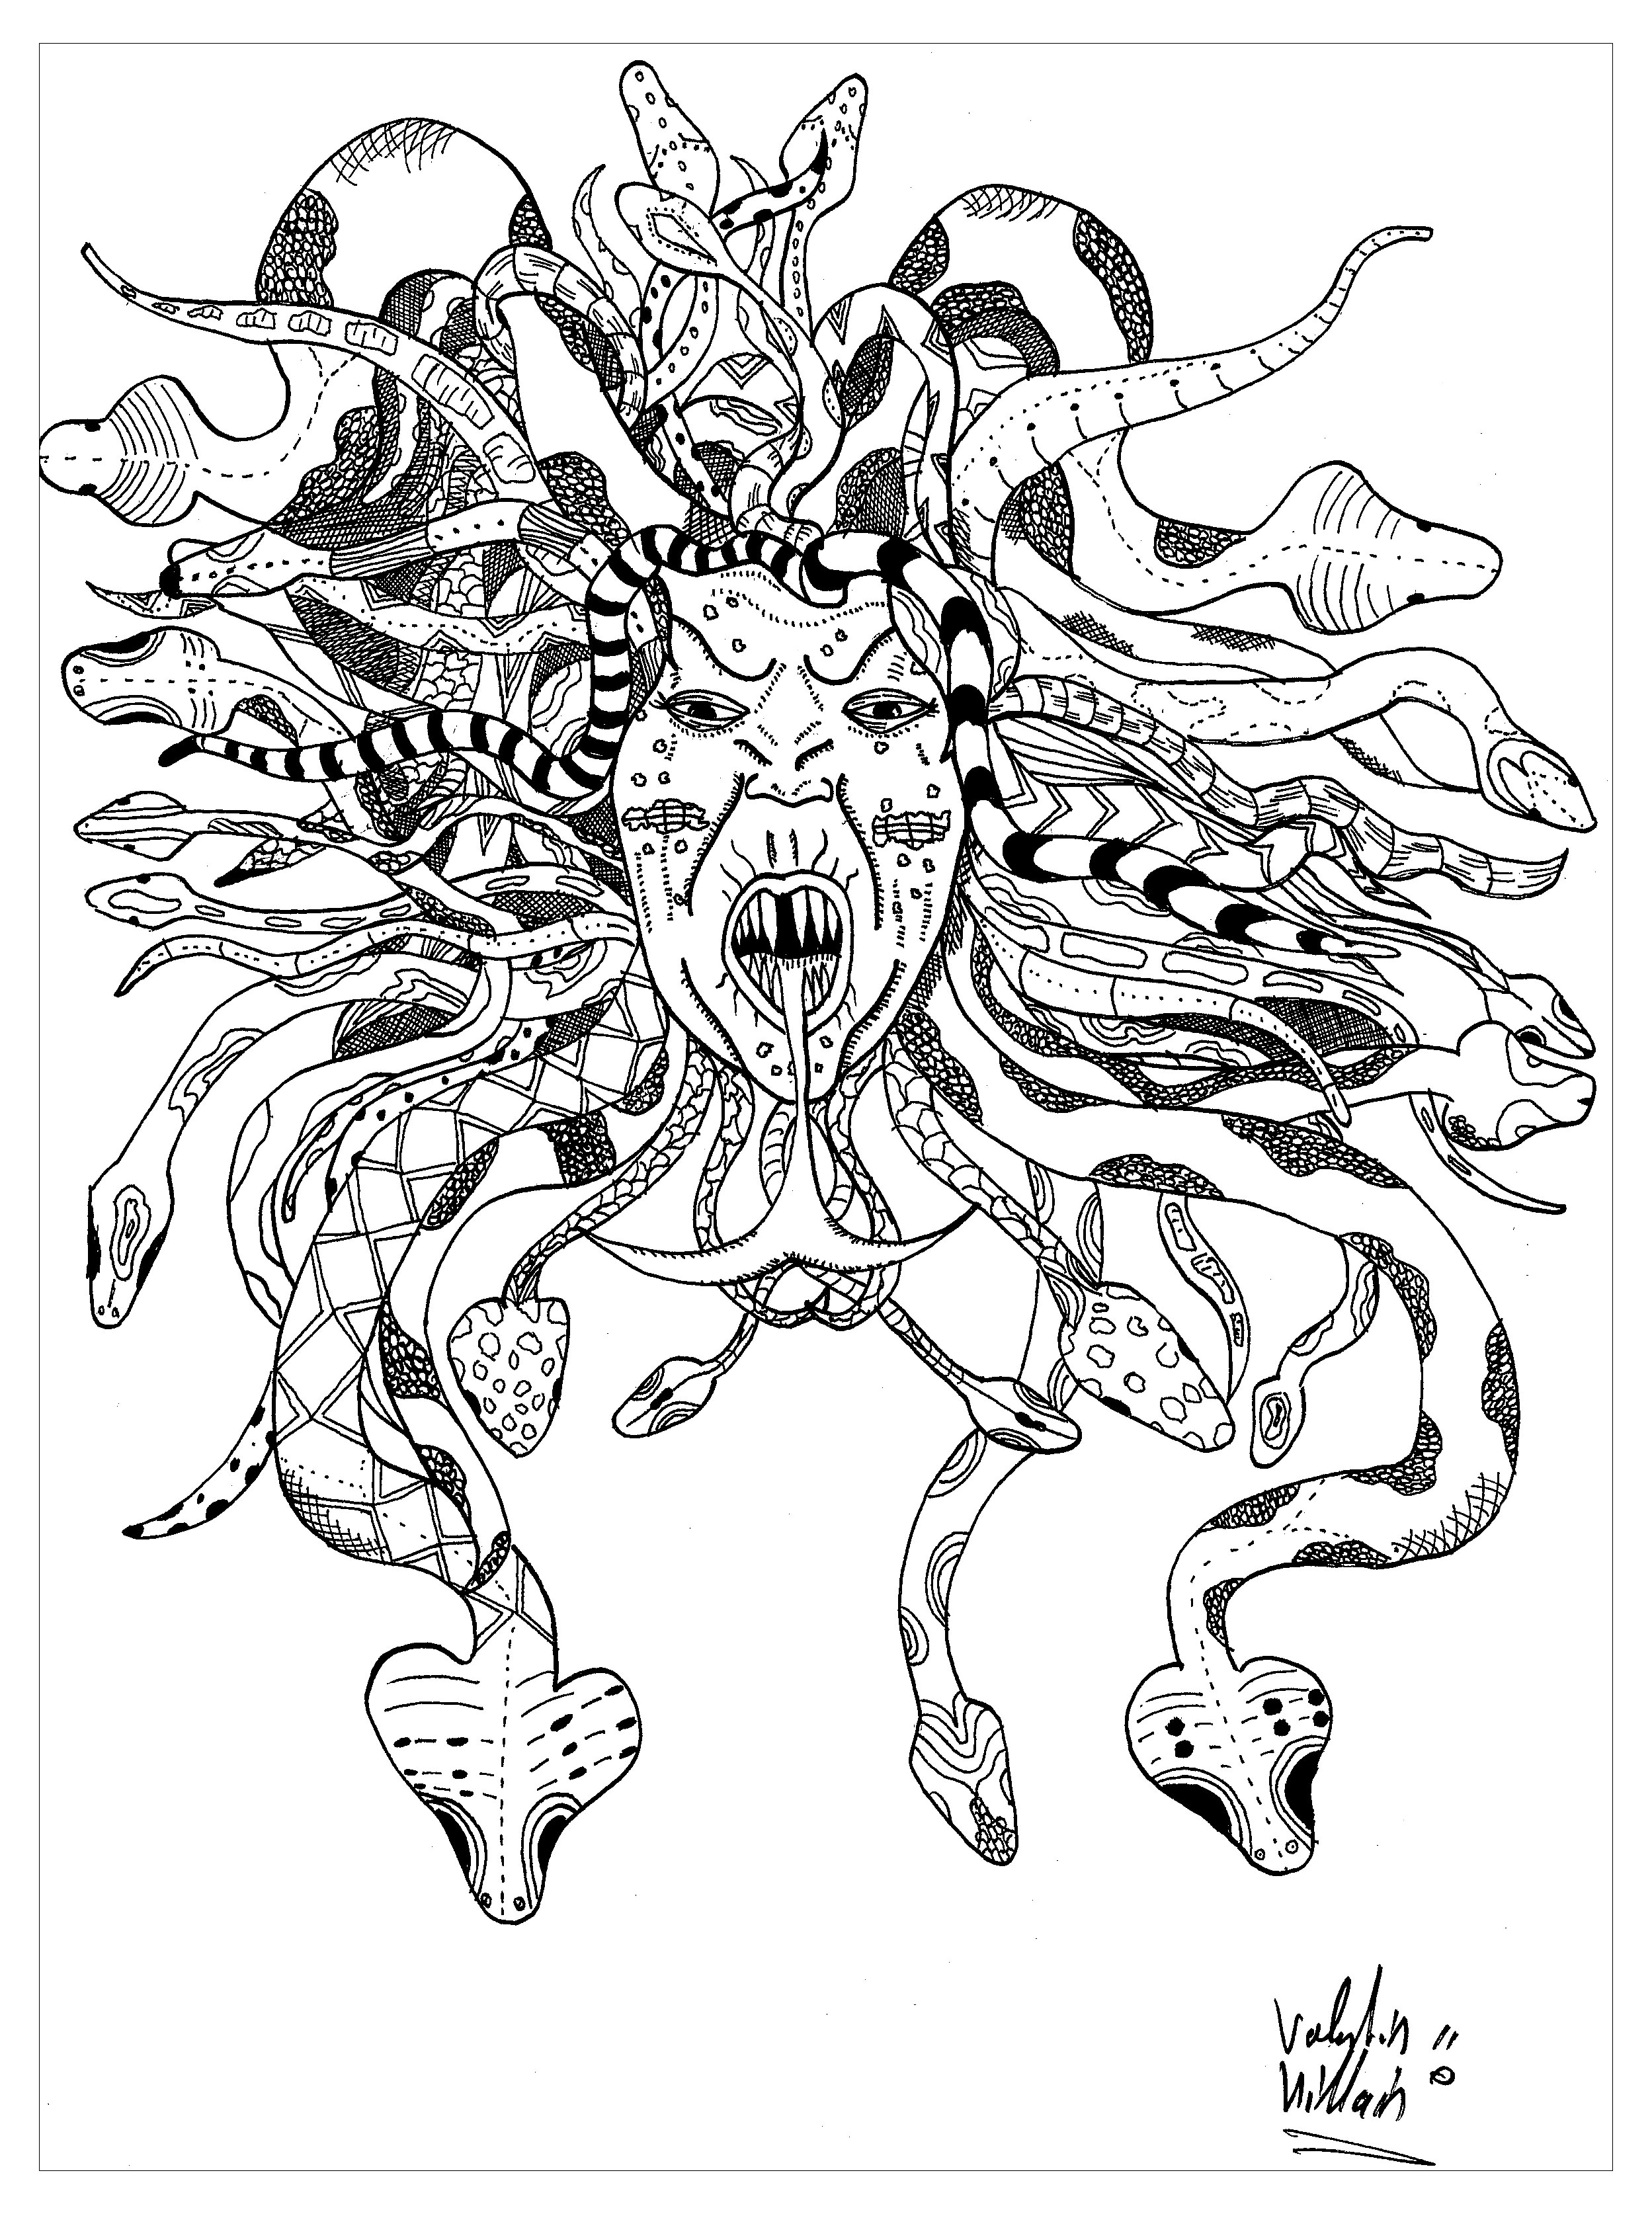 Colorare rappresentando Medusa. Ecco una magnifica rappresentazione della mitica Gorgone Medusa. Il suo volto è circondato da una criniera intrecciata di serpenti, che le conferisce un aspetto terrificante, Artista : Valentin